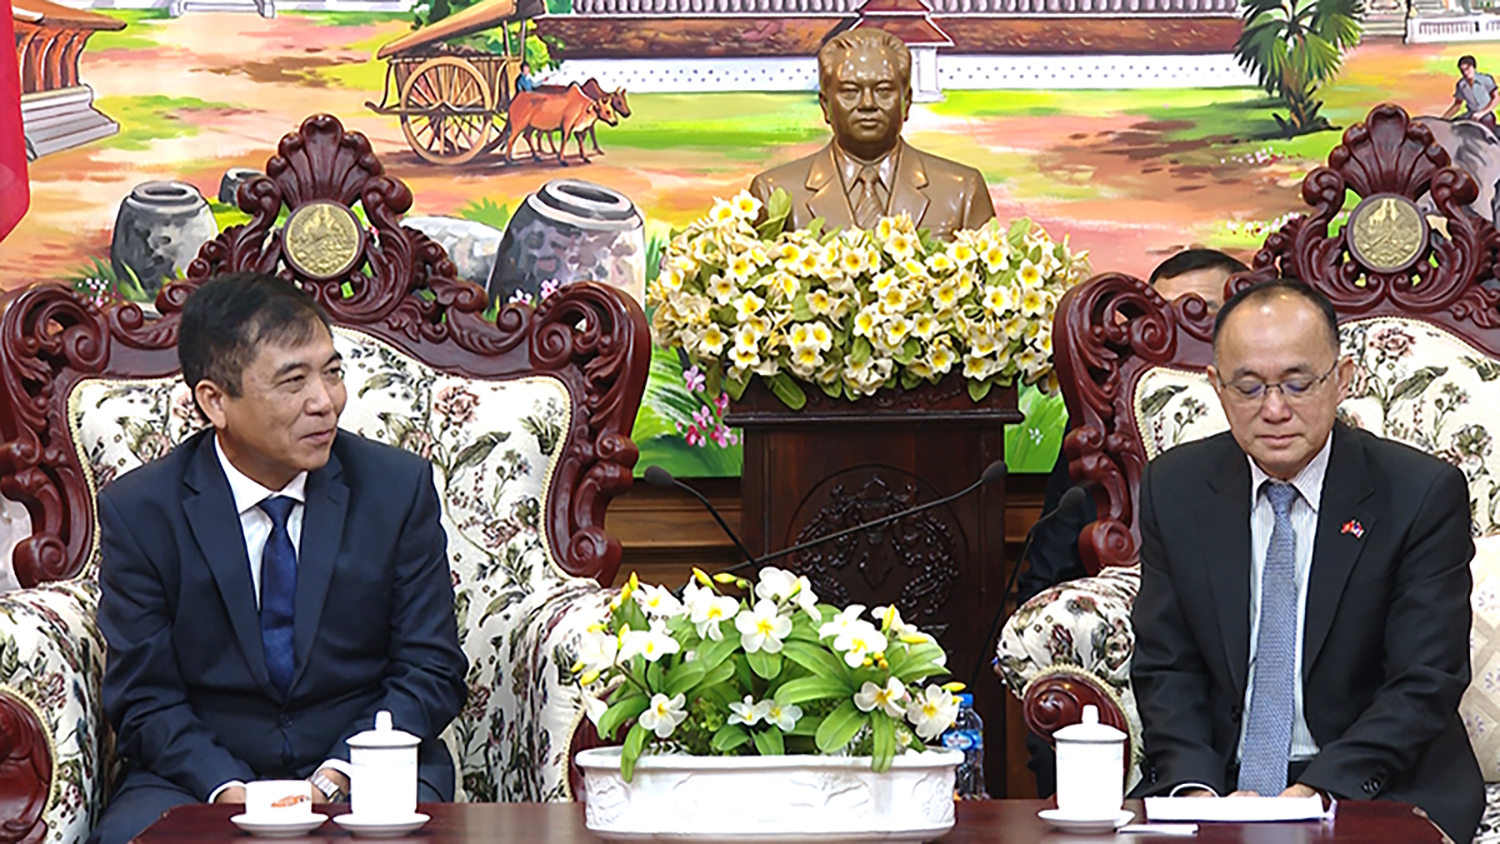 Đồng chí Phó Chủ tịch Thường trực UBND tỉnh Đoàn Ngọc Lâm chào xã giao lãnh đạo tỉnh Chăm-pa-sắc.